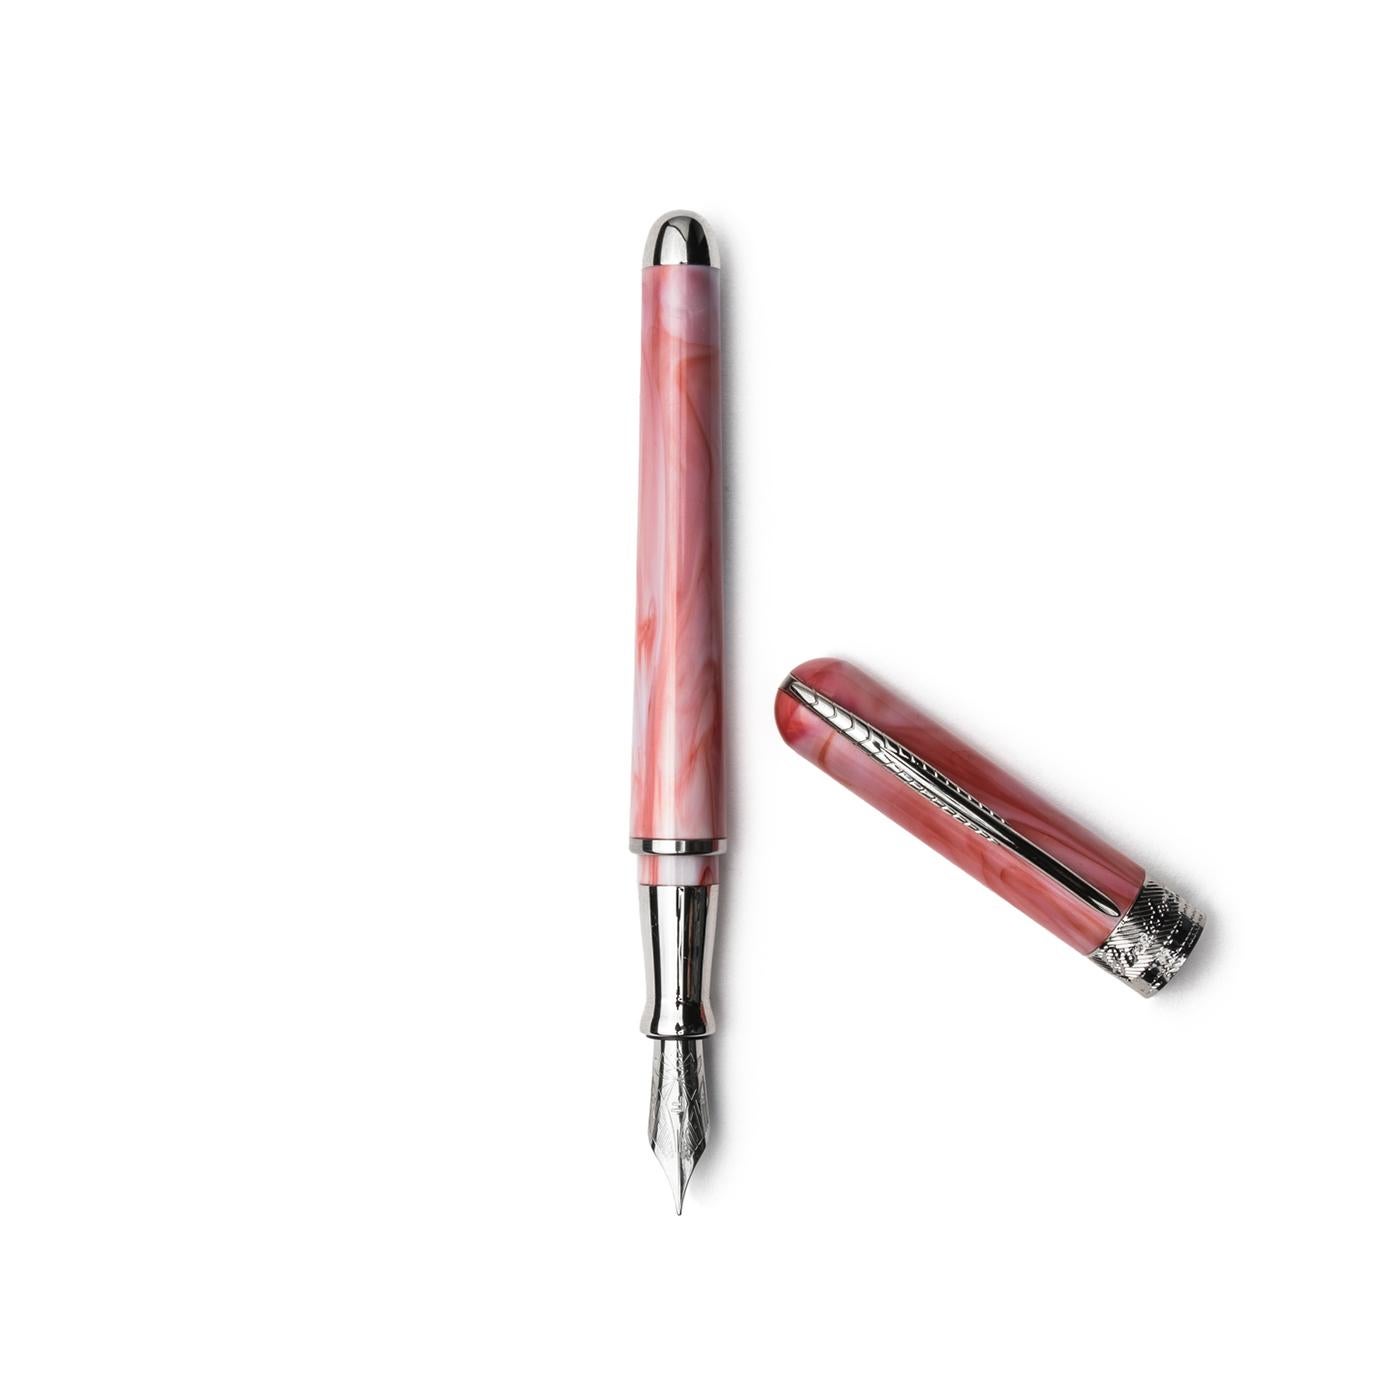 Dank der 3D-Technik und der hochpräzisen Fertigung wird der Stift ohne einen einzigen Tropfen Klebstoff zusammengebaut. Durch die Transparenz kann man nicht nur die Mechanik des Stiftes sehen, sondern auch den Tintenstand kontrollieren. Eine